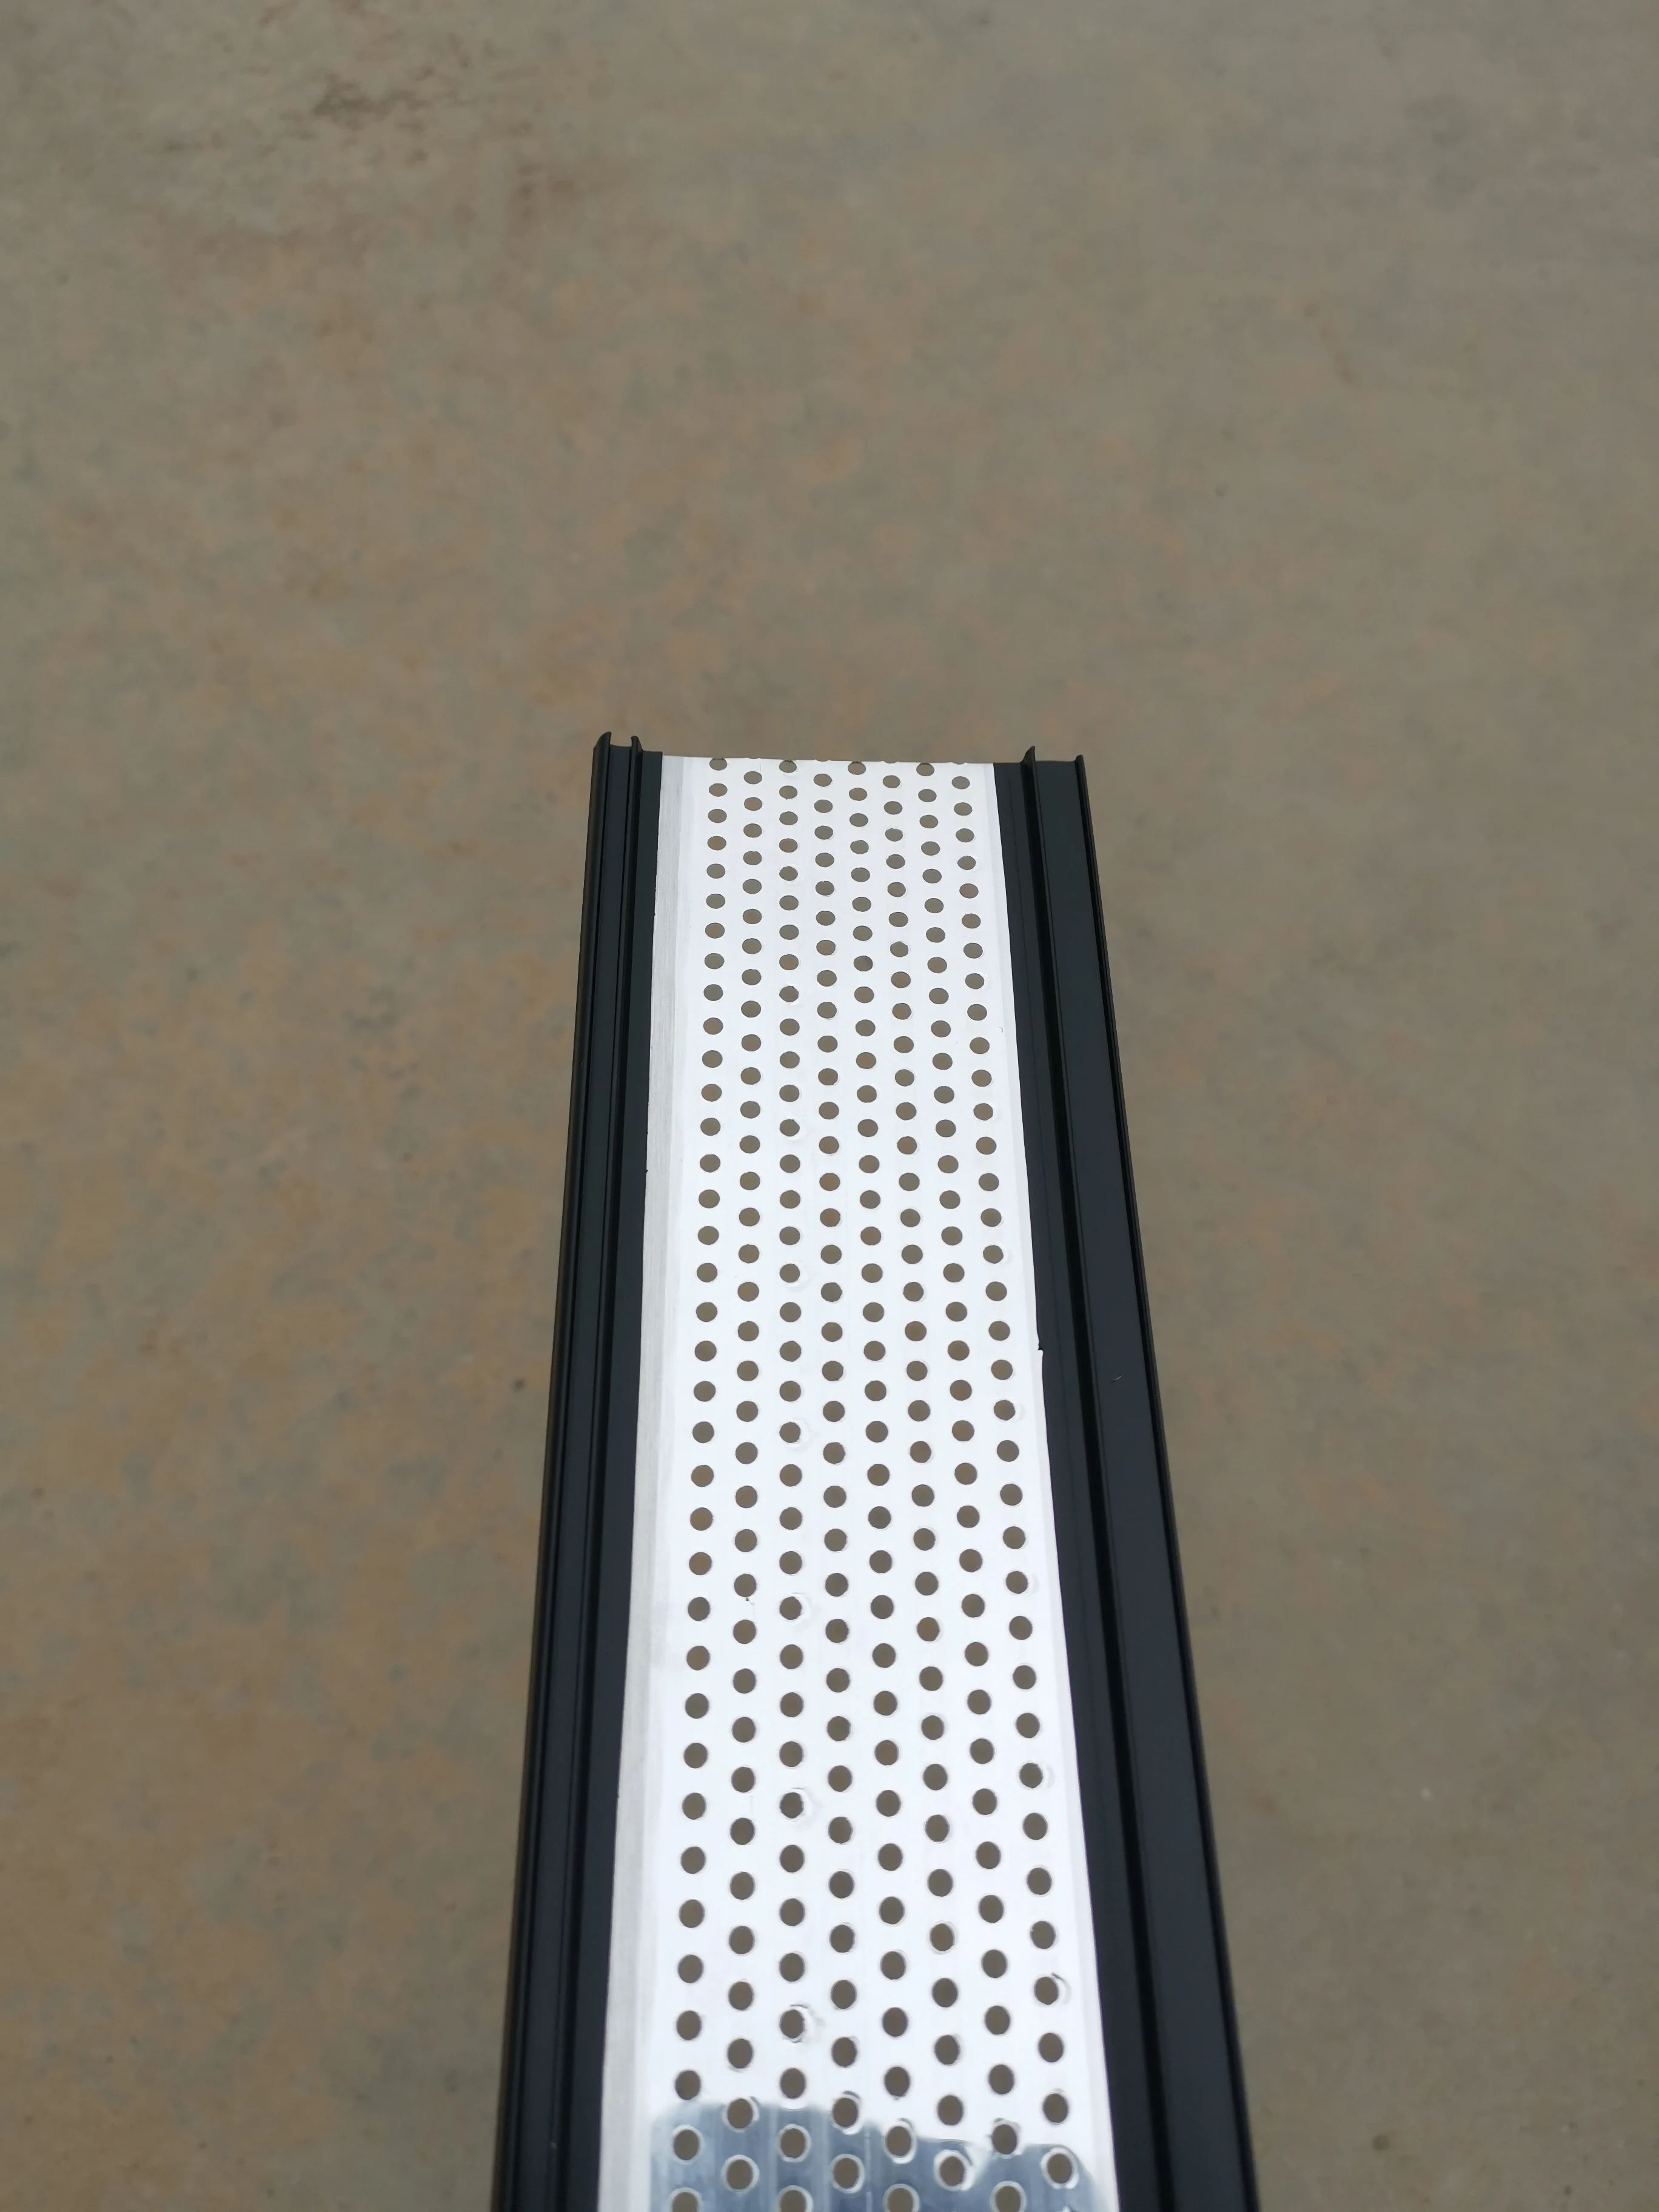 2021 Preto Brilhante Alumínio Plástico Chnennel Tira de Letra com Furos Tampa da Guarnição de Publicidade 3D Luminosa Lightbox disponibilização de Material